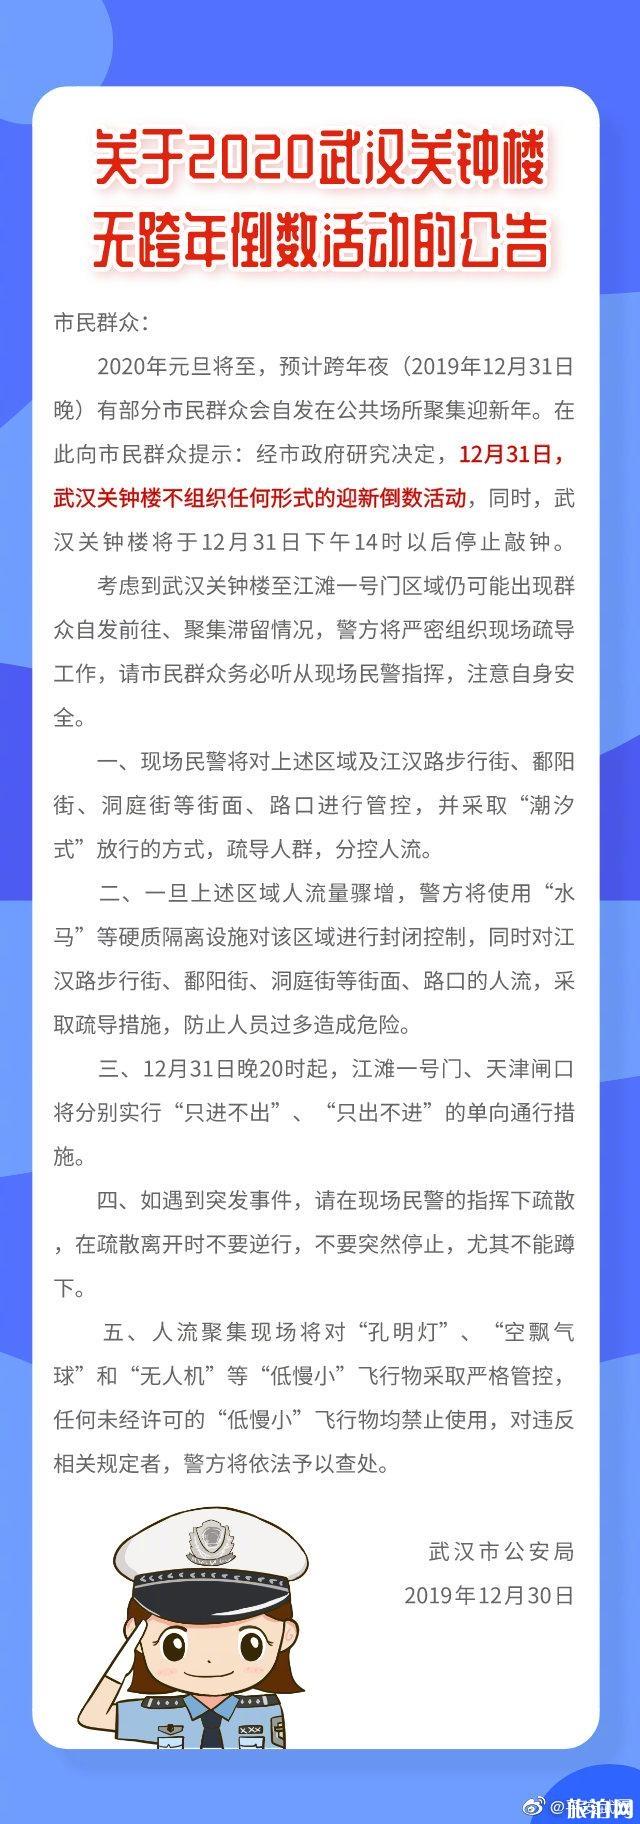 2020年武汉关钟楼元旦跨年倒数活动取消